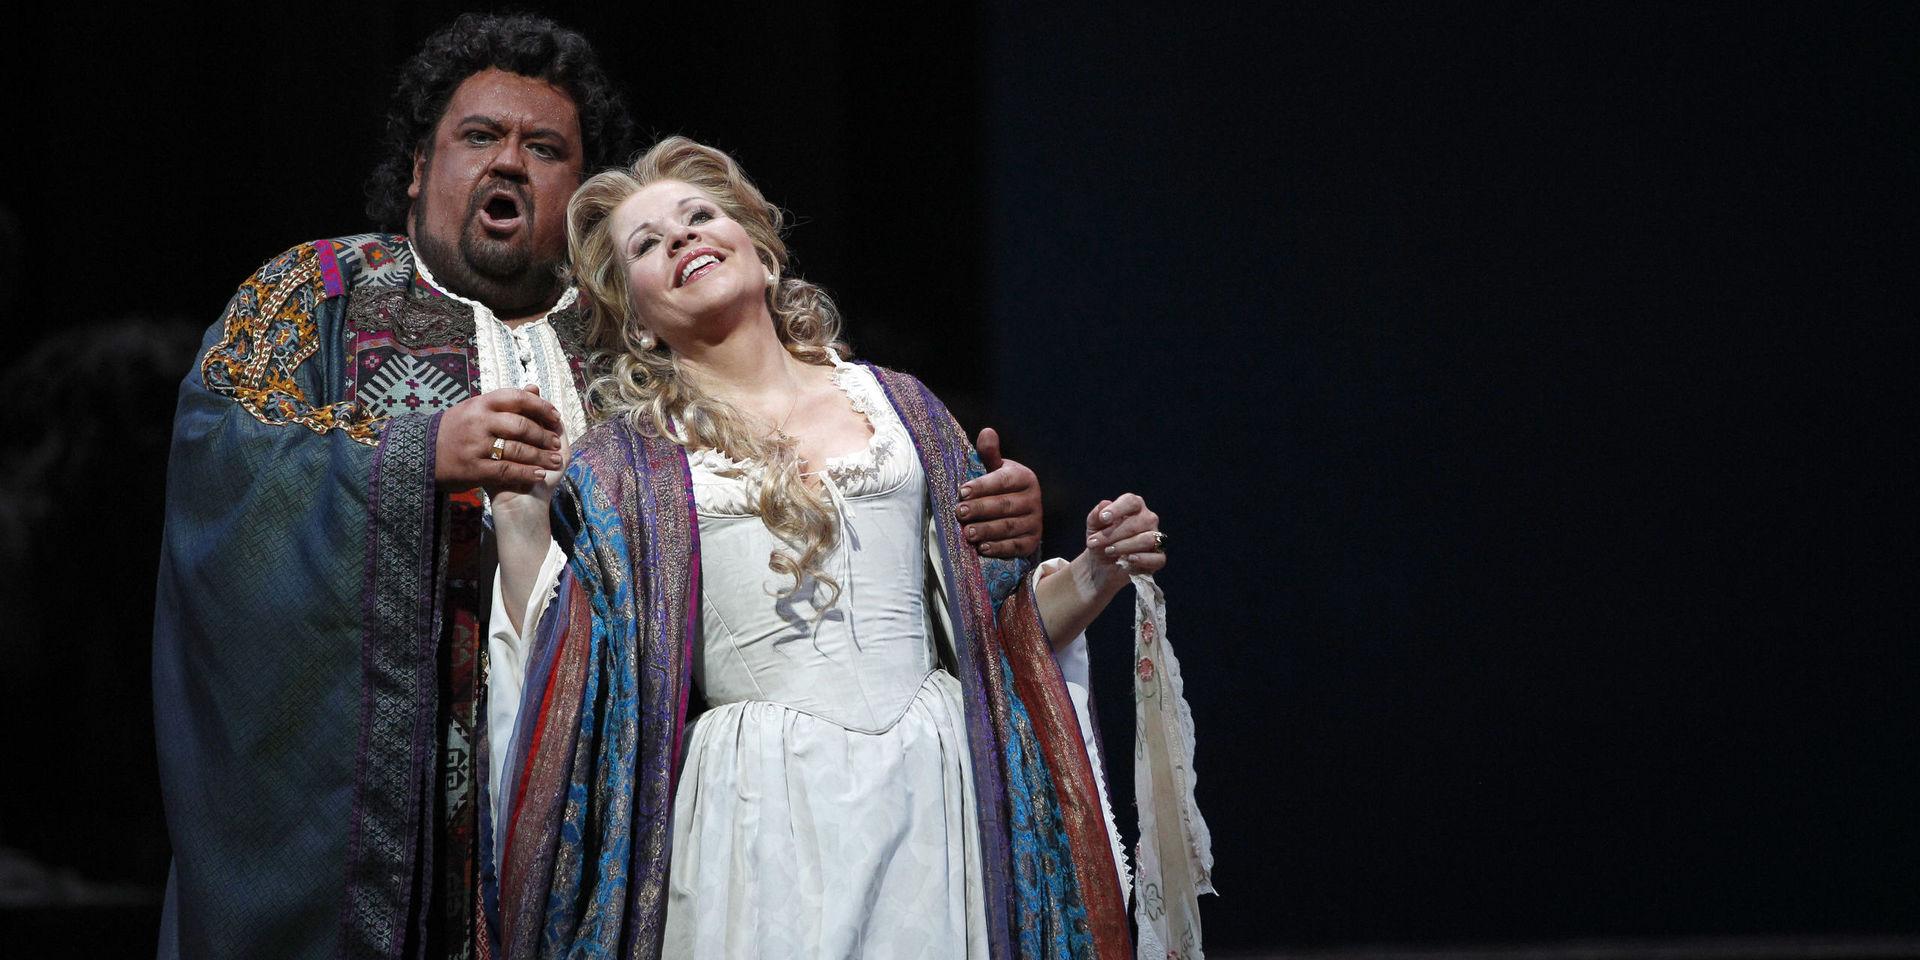 Inget för Uddevalla. Opera från Metropolitan, här operan Otello. Johan Botha sjunger titelrollen och Renee Fleming sjunger Desdemona.